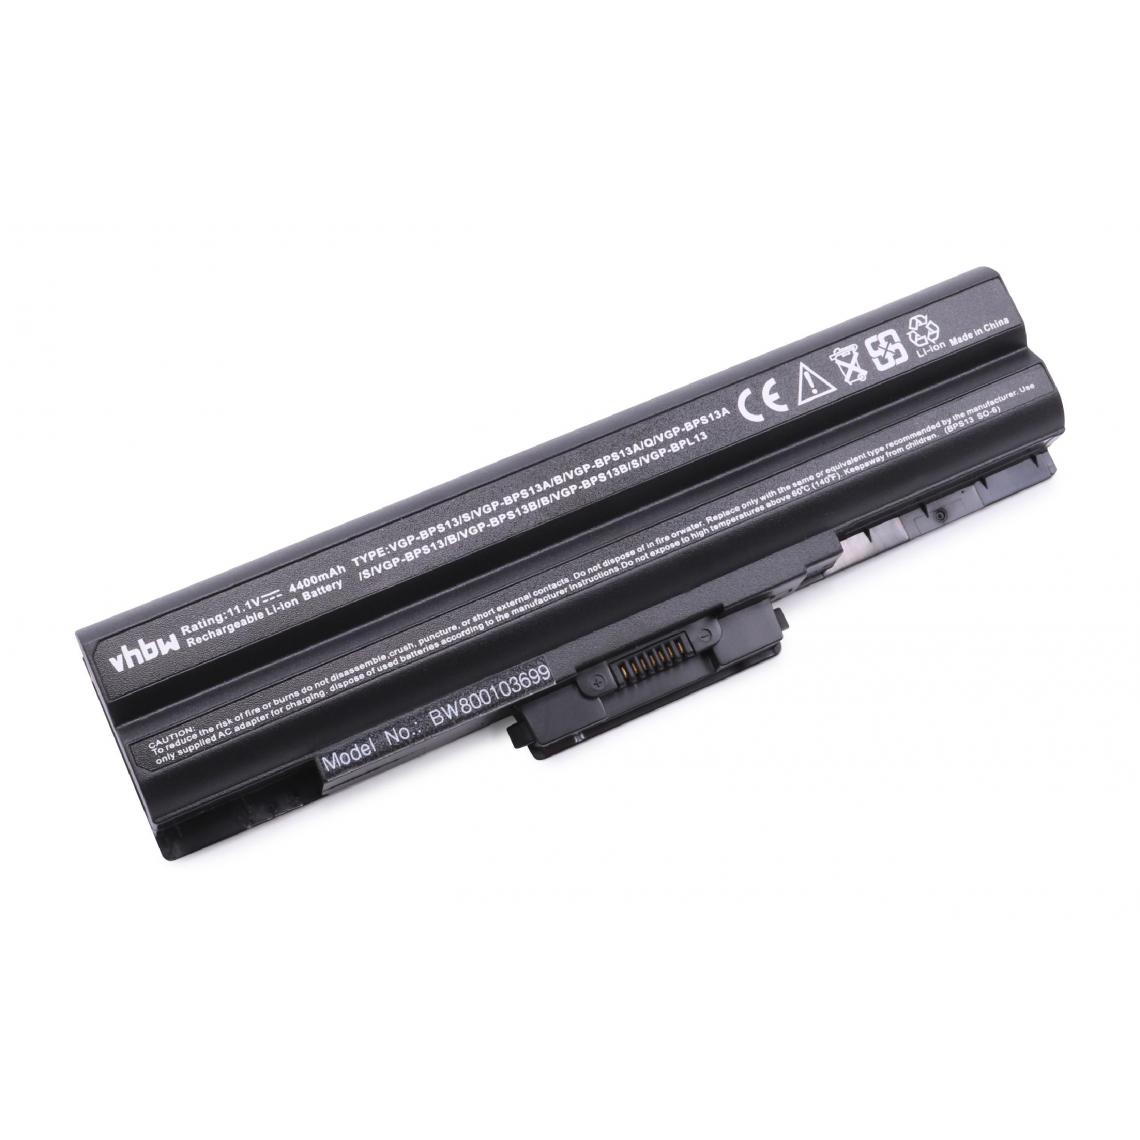 Vhbw - vhbw Batterie compatible avec Sony Vaio VGN-SR46MD/B, VGN-SR46TD/B, VGN-SR48J, VGN-SR48J/B ordinateur portable (4400mAh, 11,1V, noir) - Batterie PC Portable